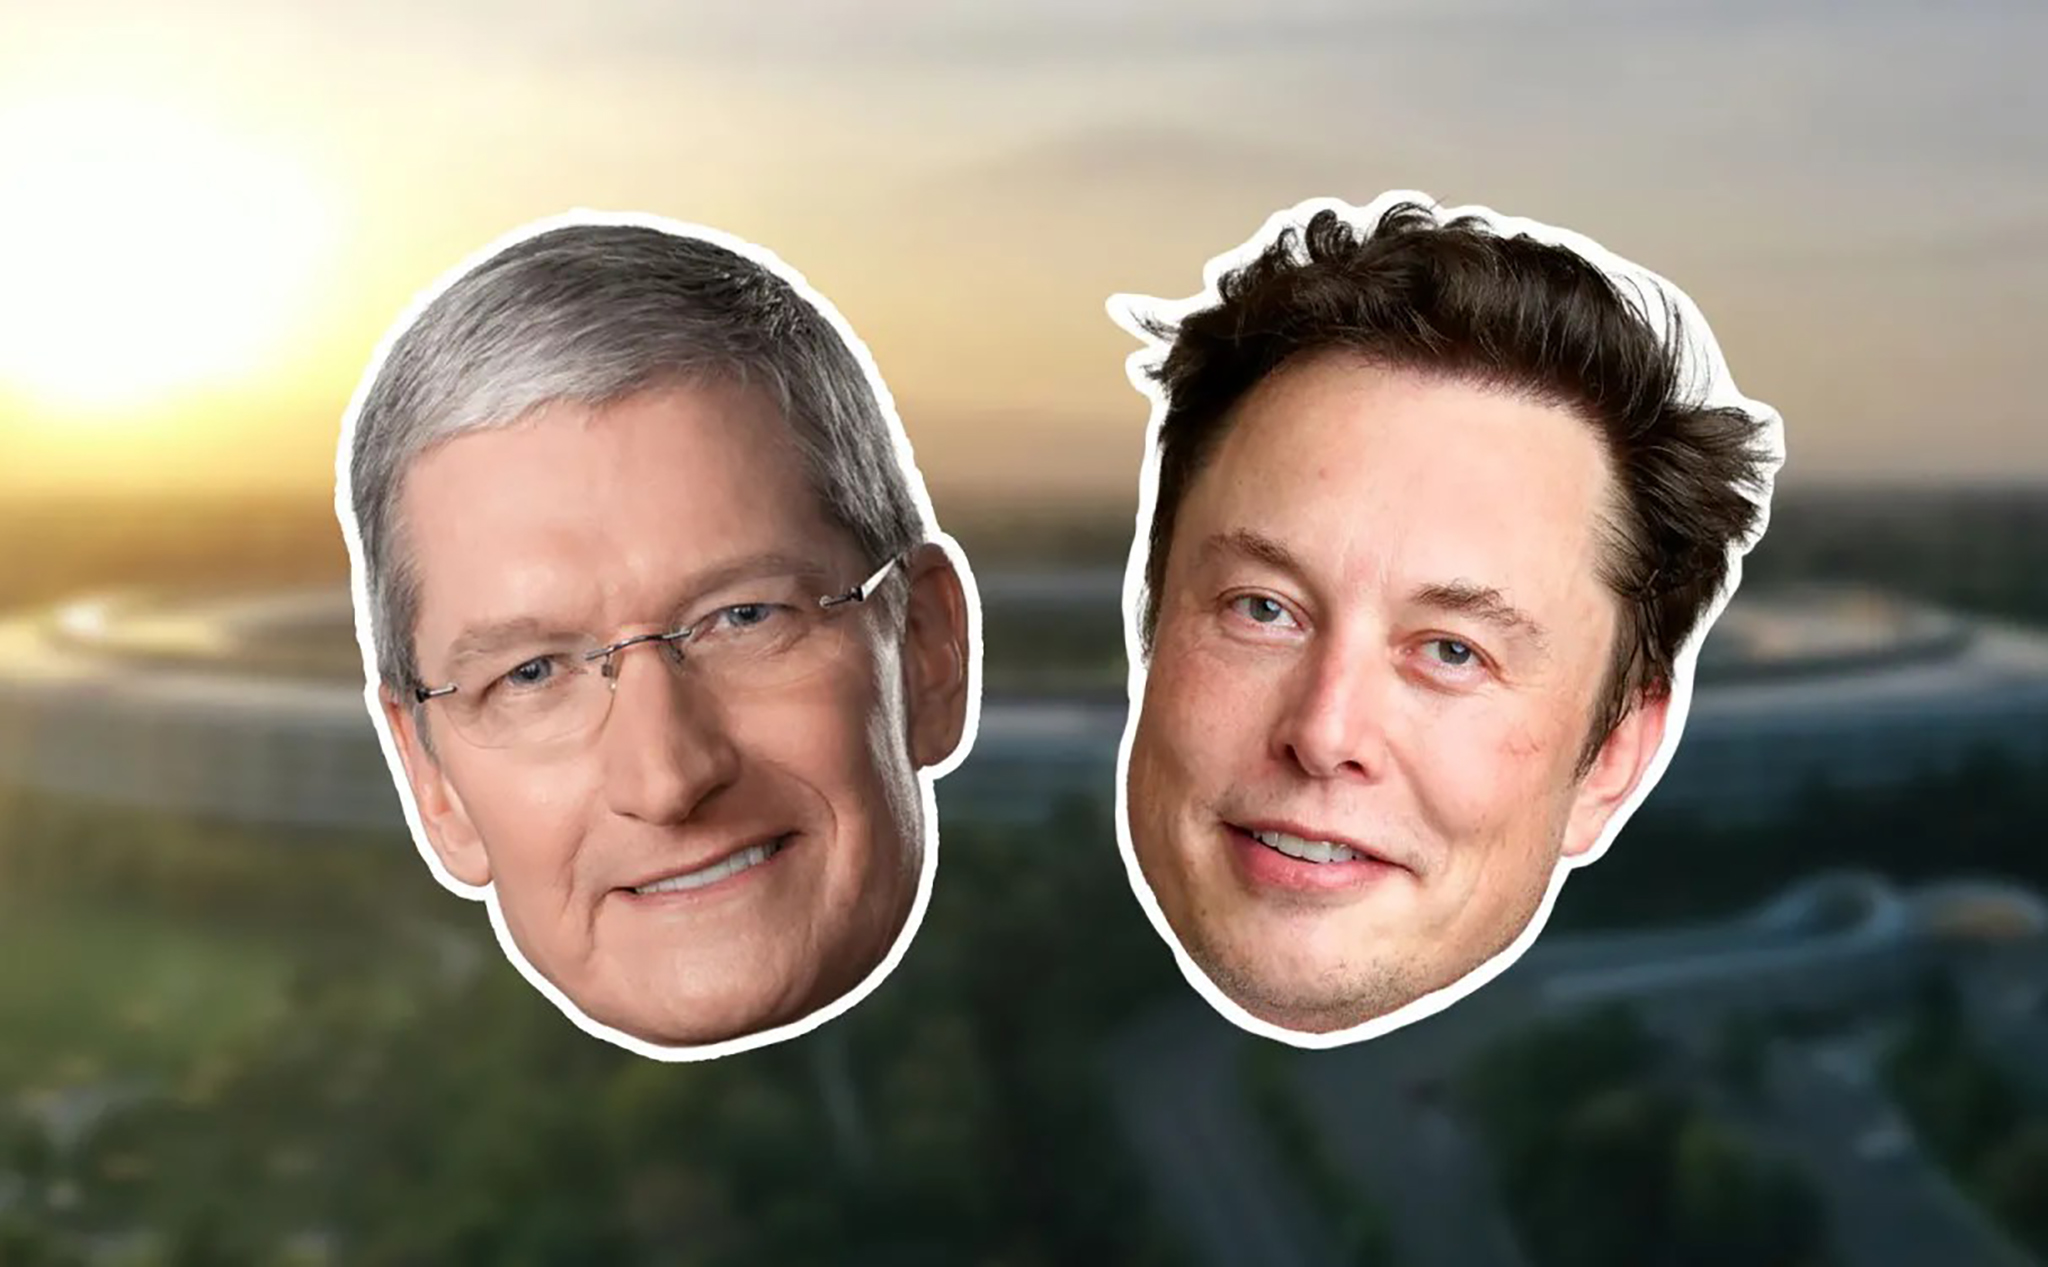 Elons Musk từng muốn bán Tesla cho Apple và Tim Cook cũng từng muốn mua Tesla